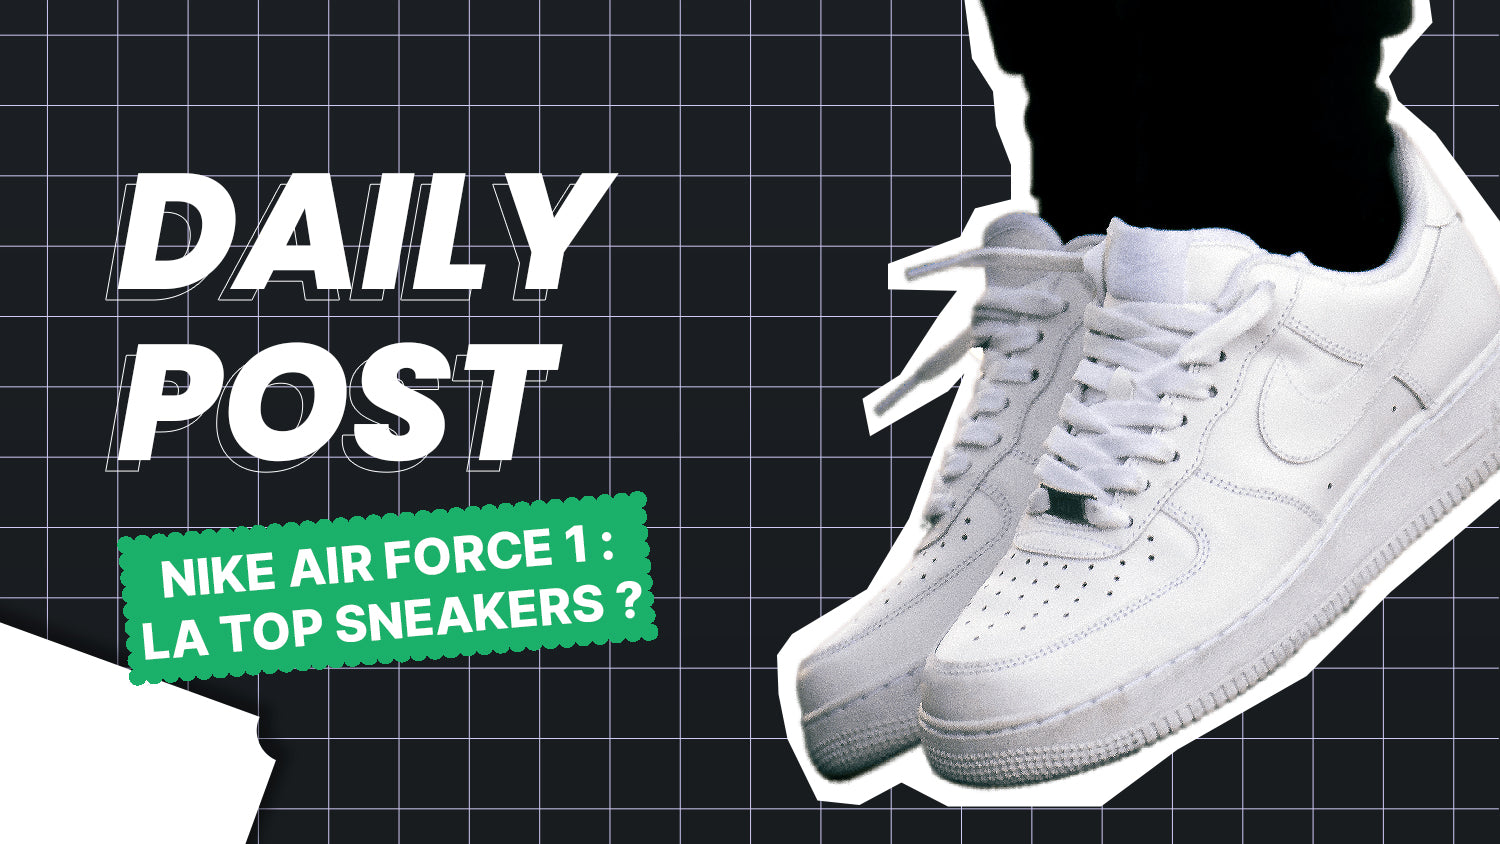 Pourquoi les Air Force One sont-elles les meilleures sneakers ?